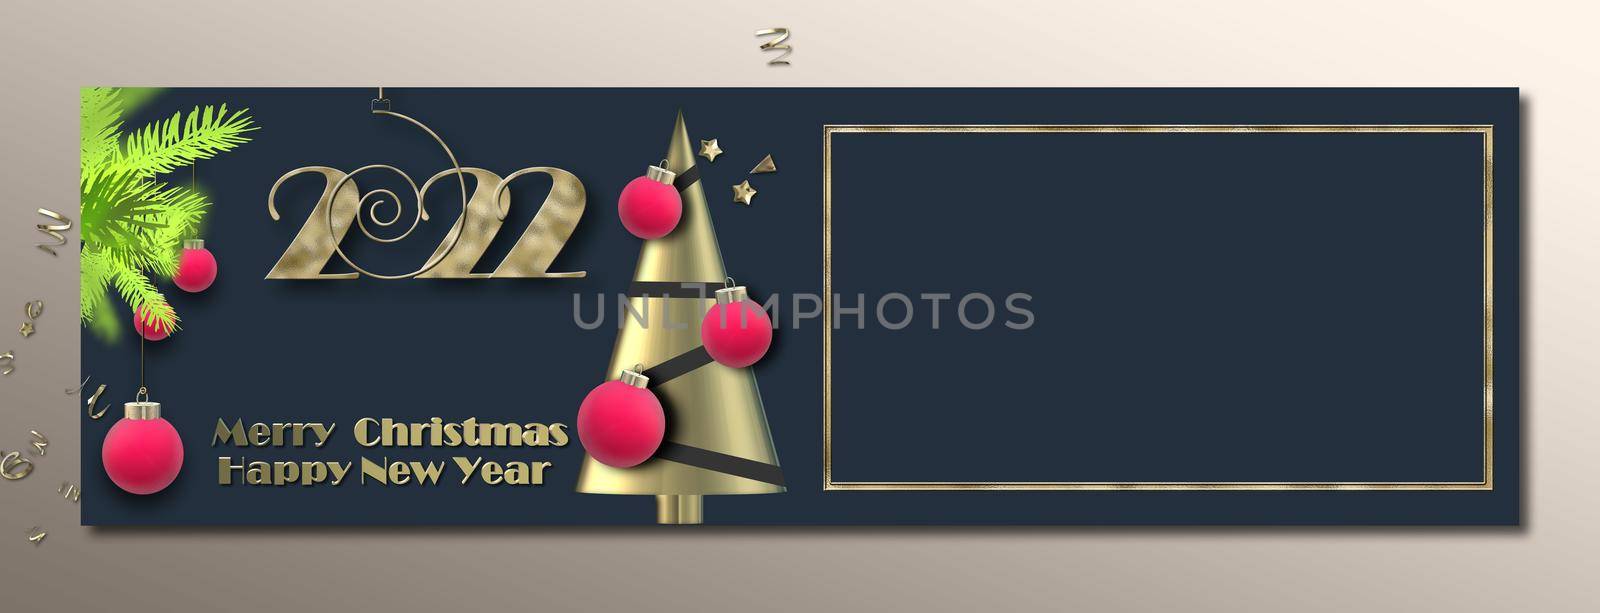 Christmas banner, Festive holiday header design by NelliPolk